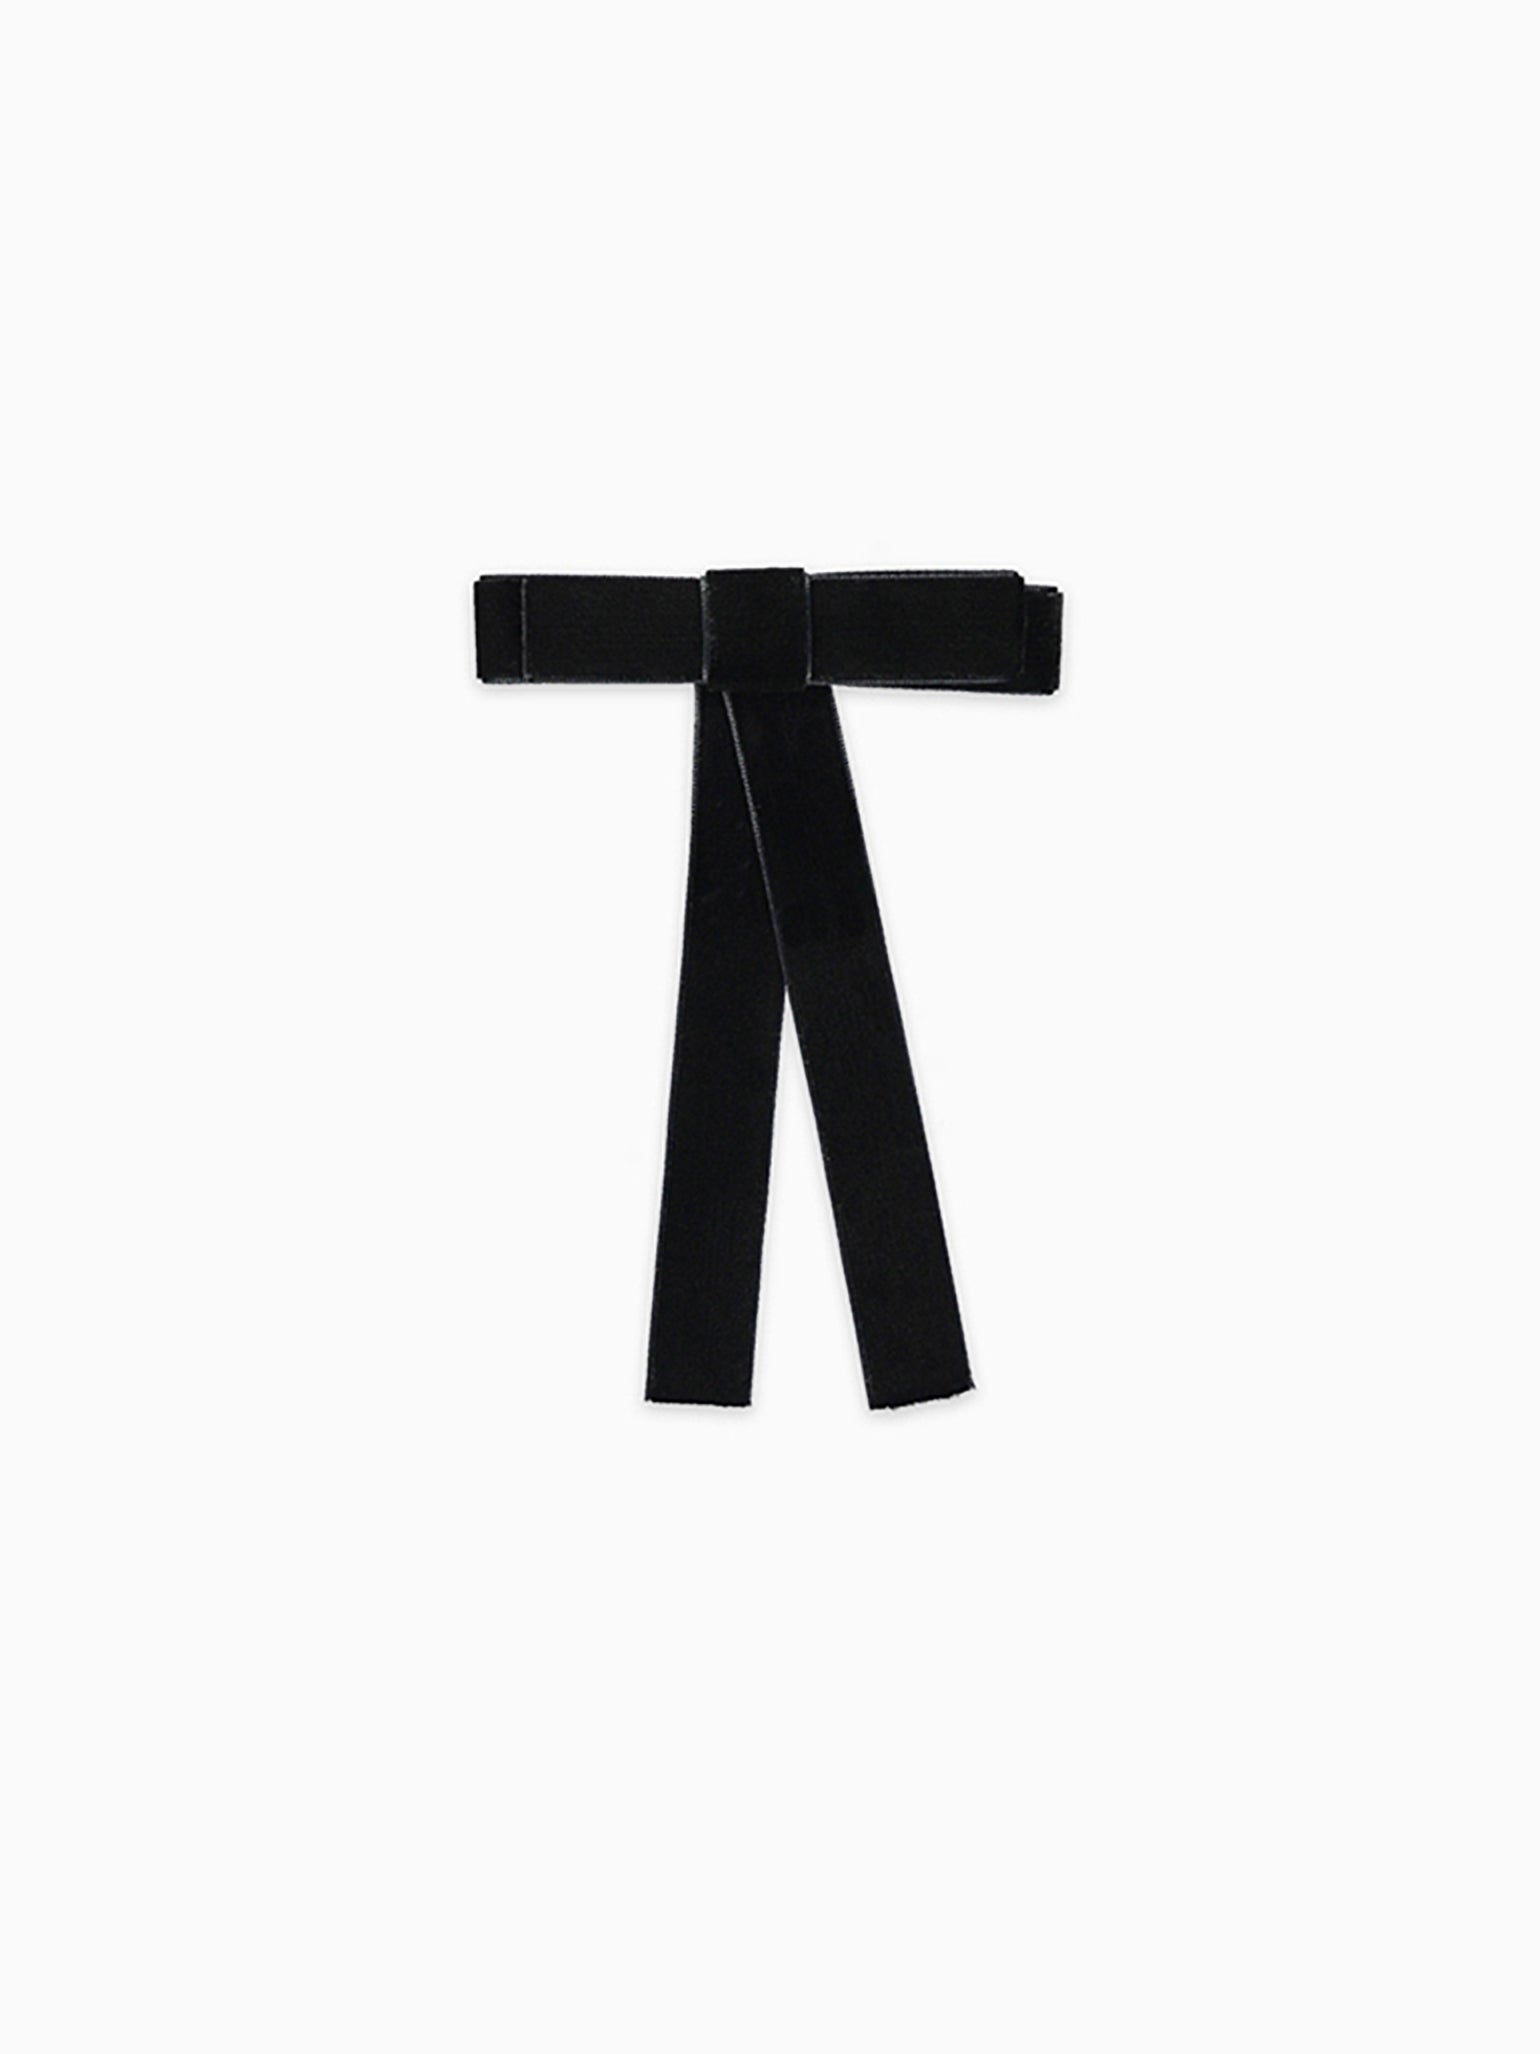 Shop Black Velvet Ribbon 25mm online - Nov 2023